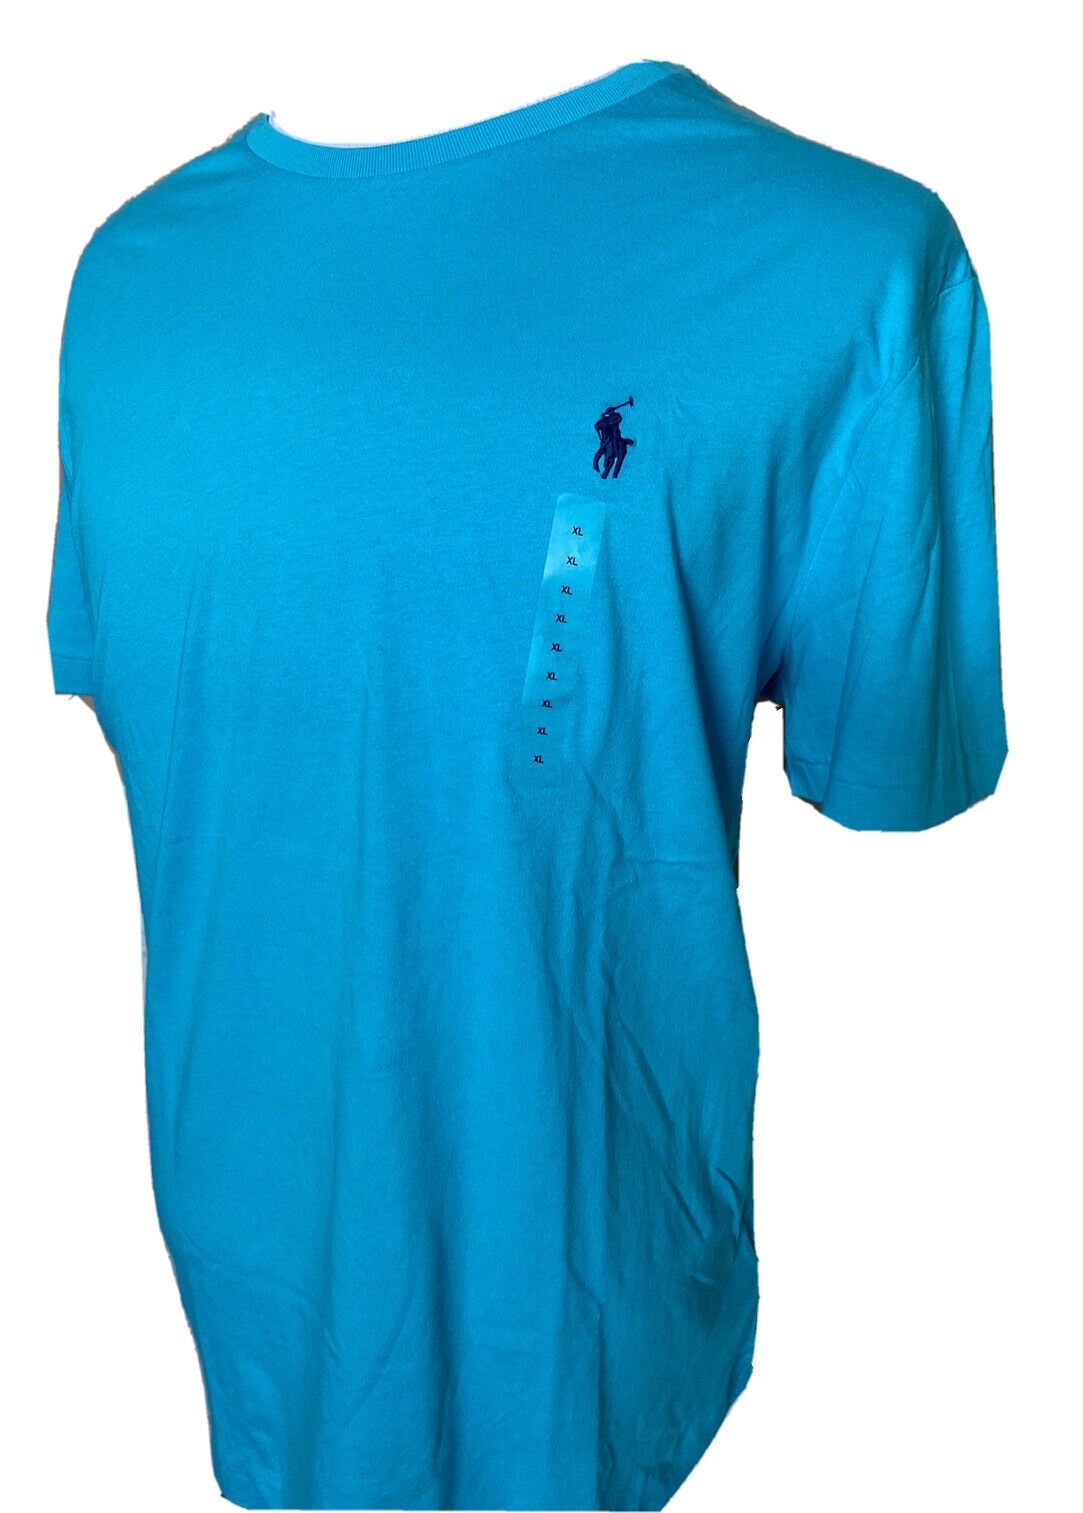 NWT Polo Ralph Lauren Short Sleeve Cotton T-shirt Blue XL